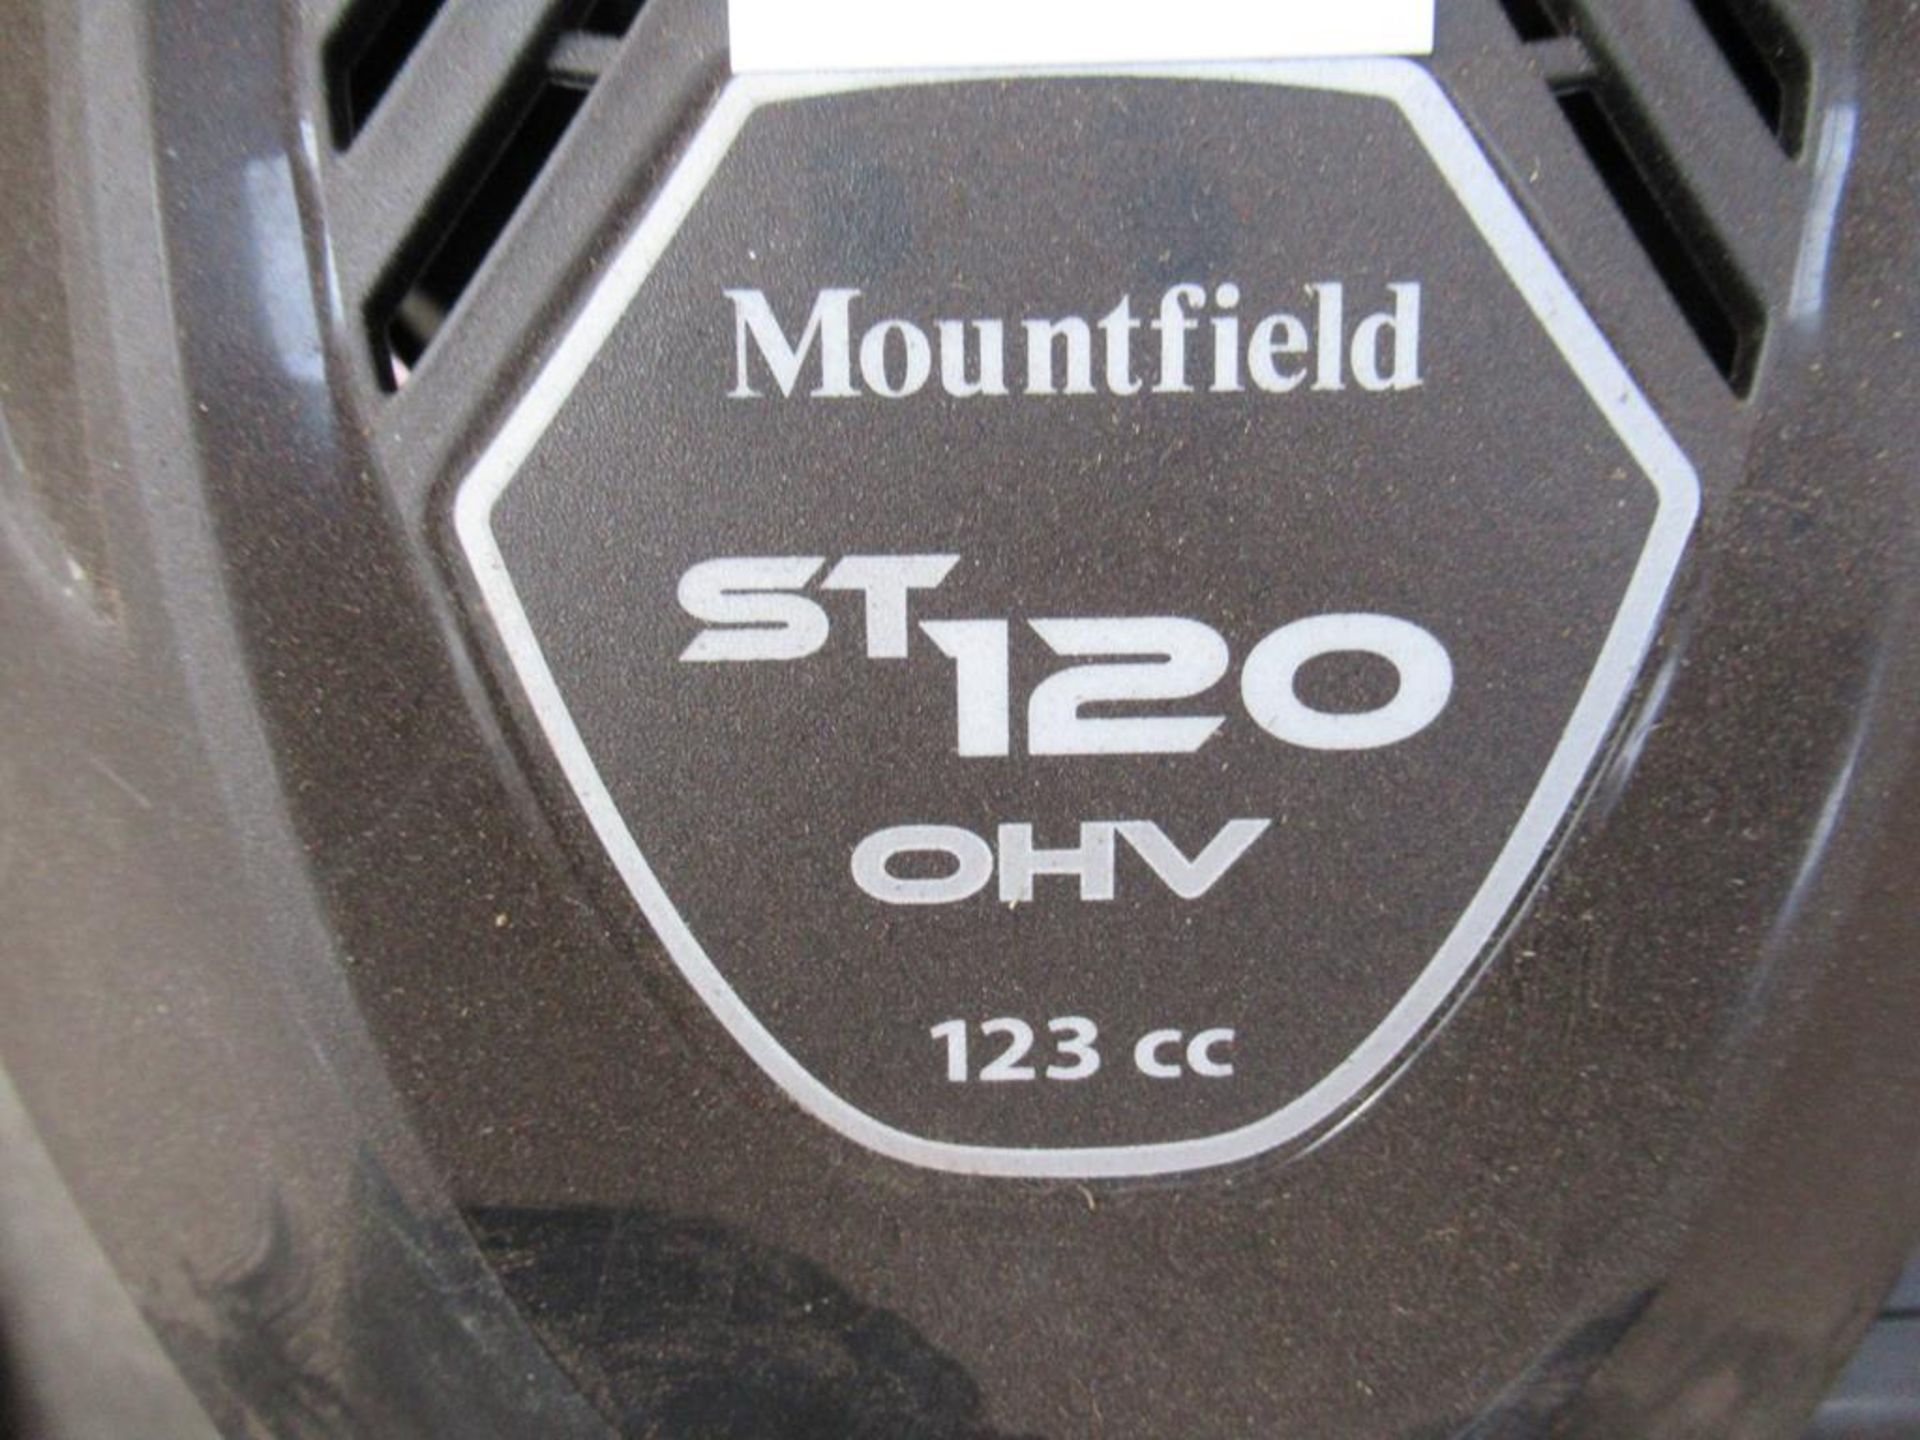 Mountfield ST120 petrol rotavator - Image 2 of 2